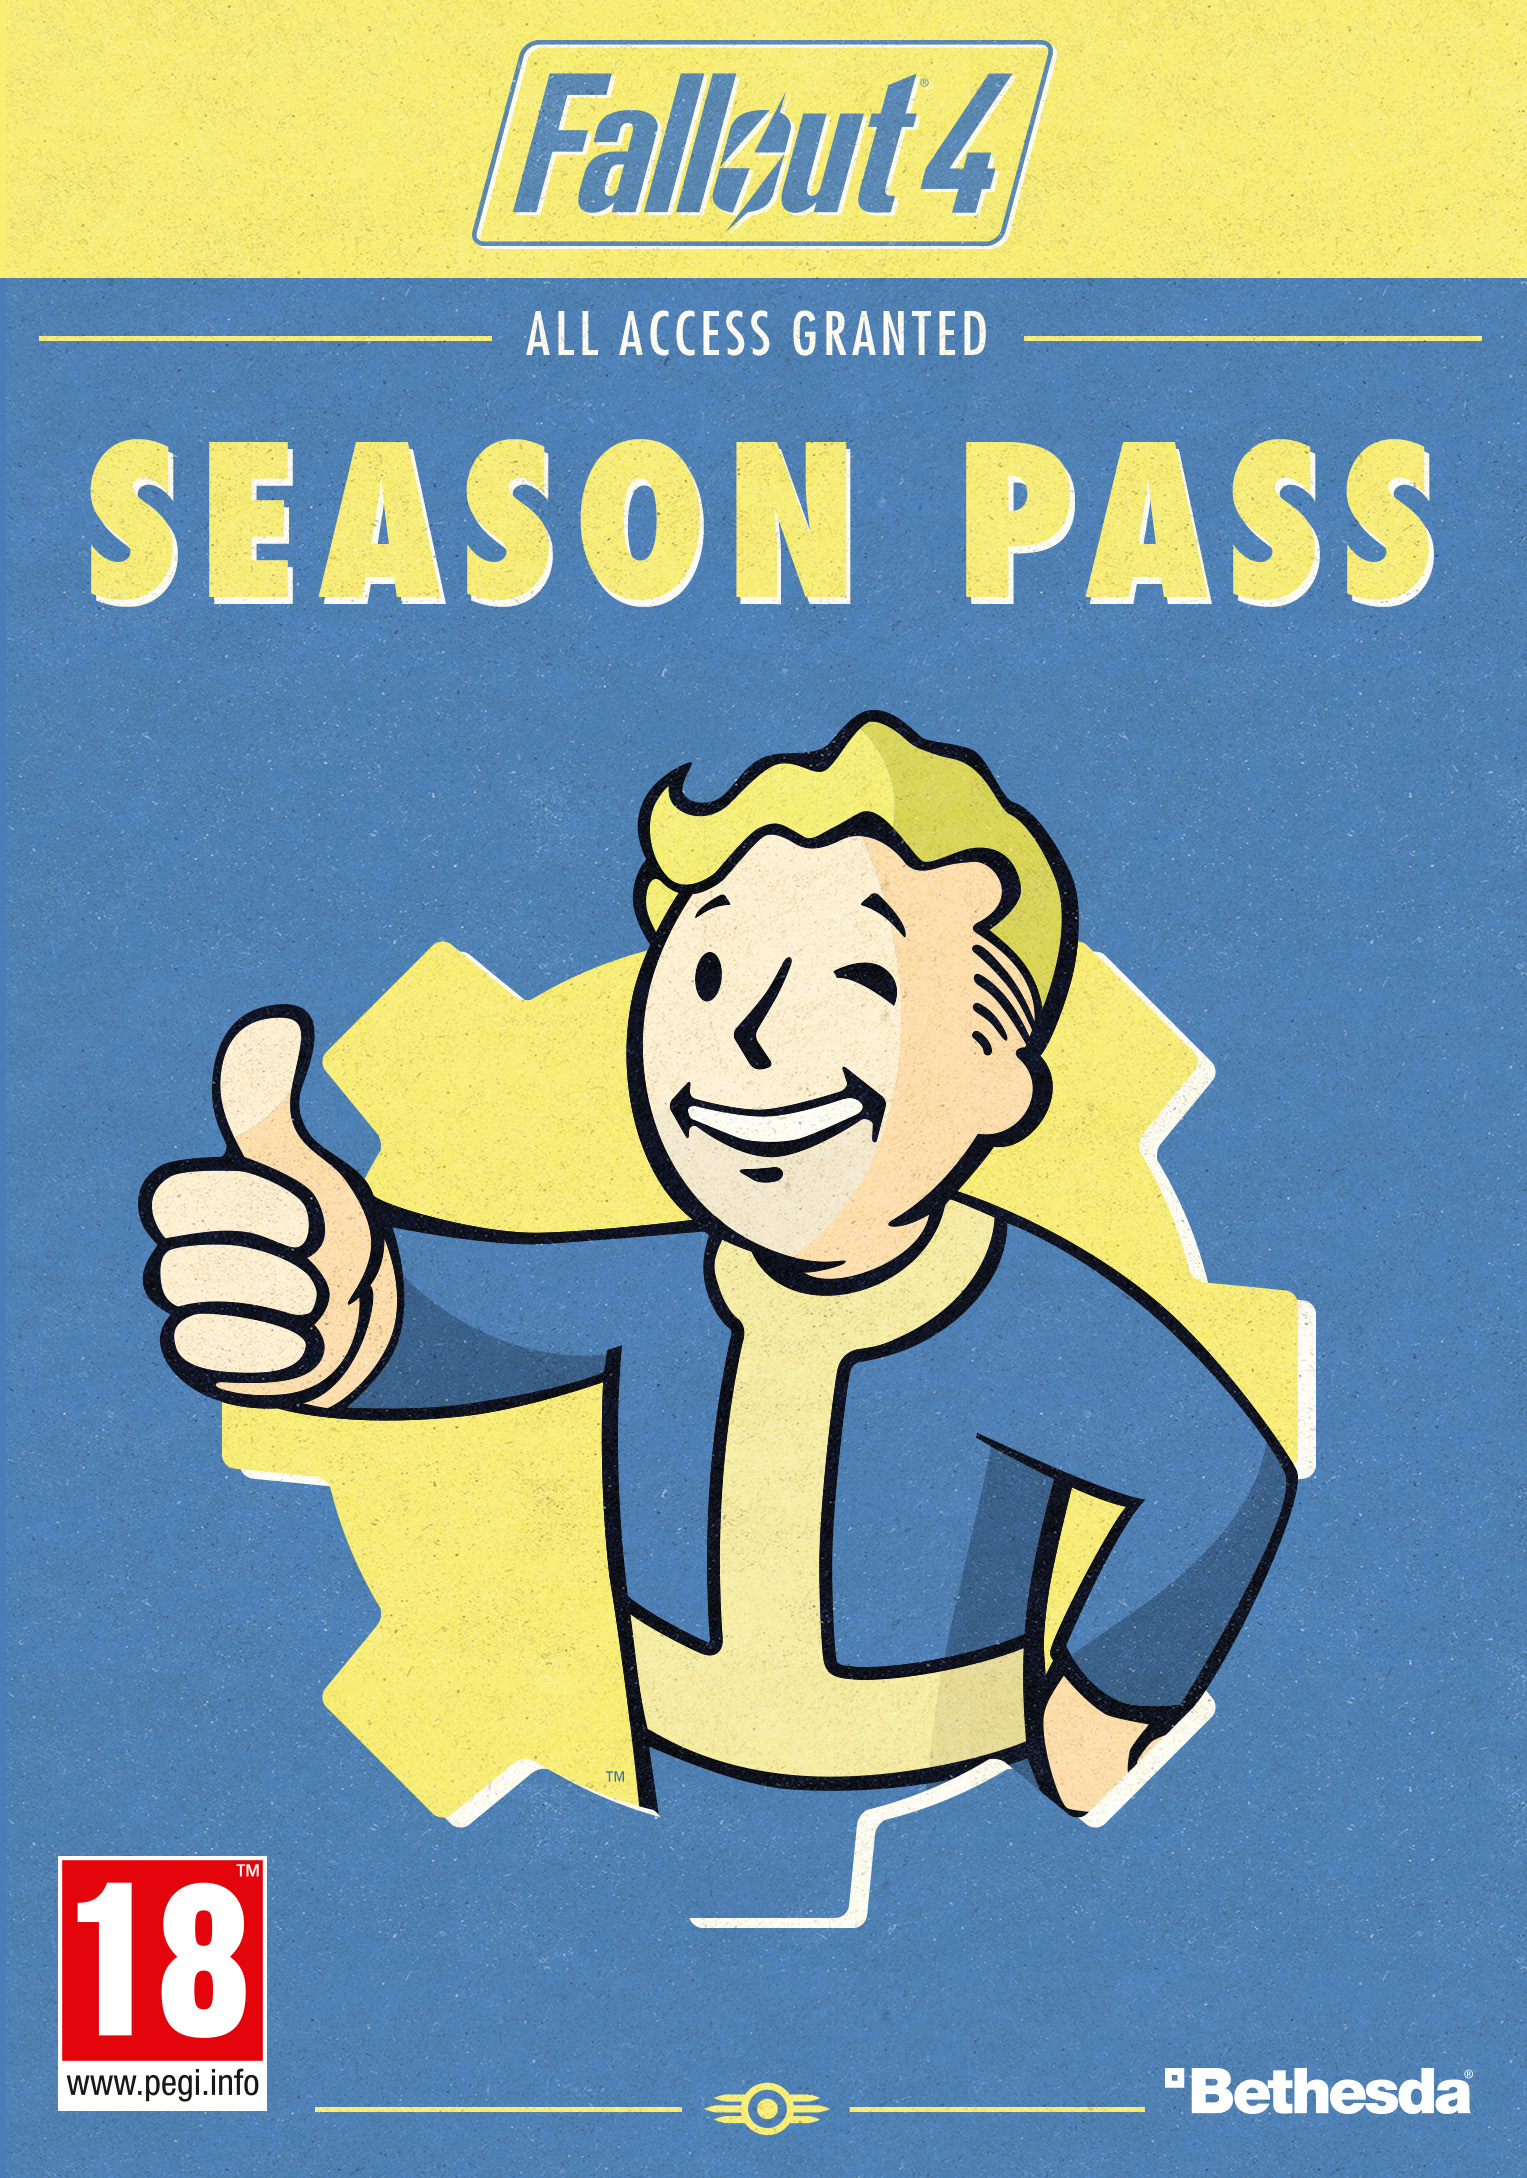 Fallout 4のダウンロードコンテンツ一覧 Fallout Wiki Fandom